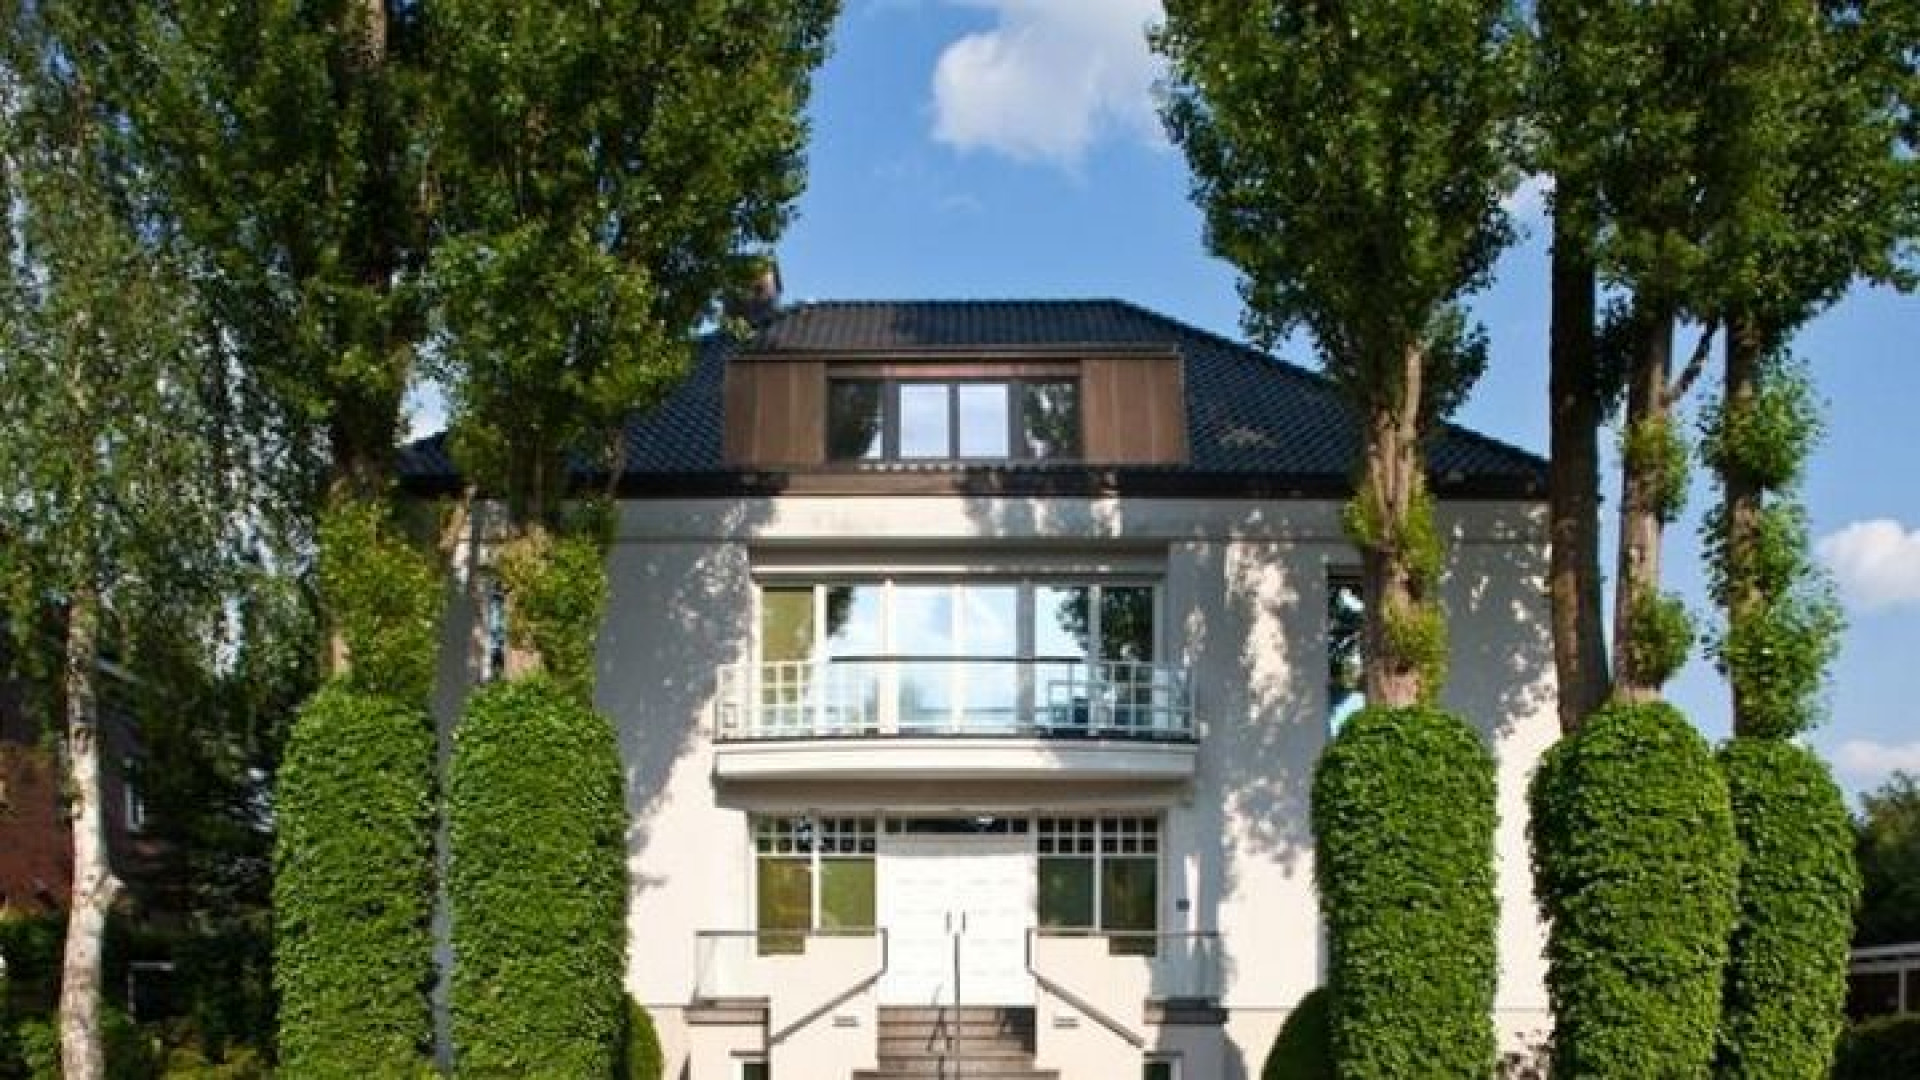 Huurprijs Hamburgse villa Sabia verlaagd. Zie foto's 1